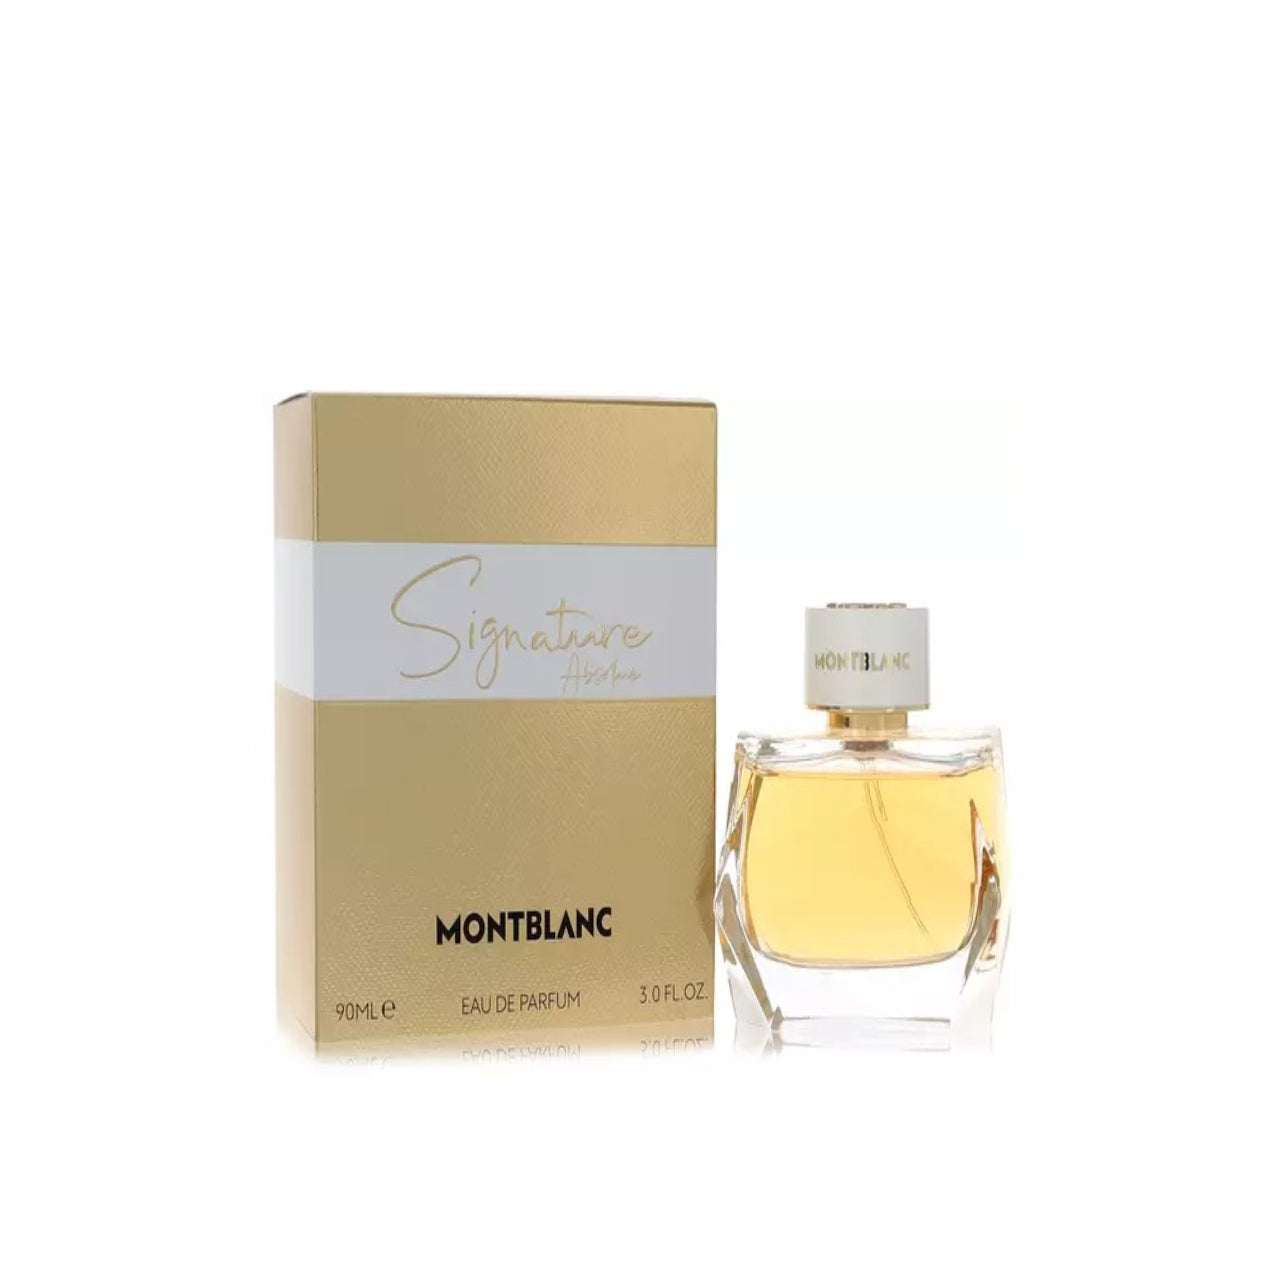 Montblanc Signature Absolue Perfume